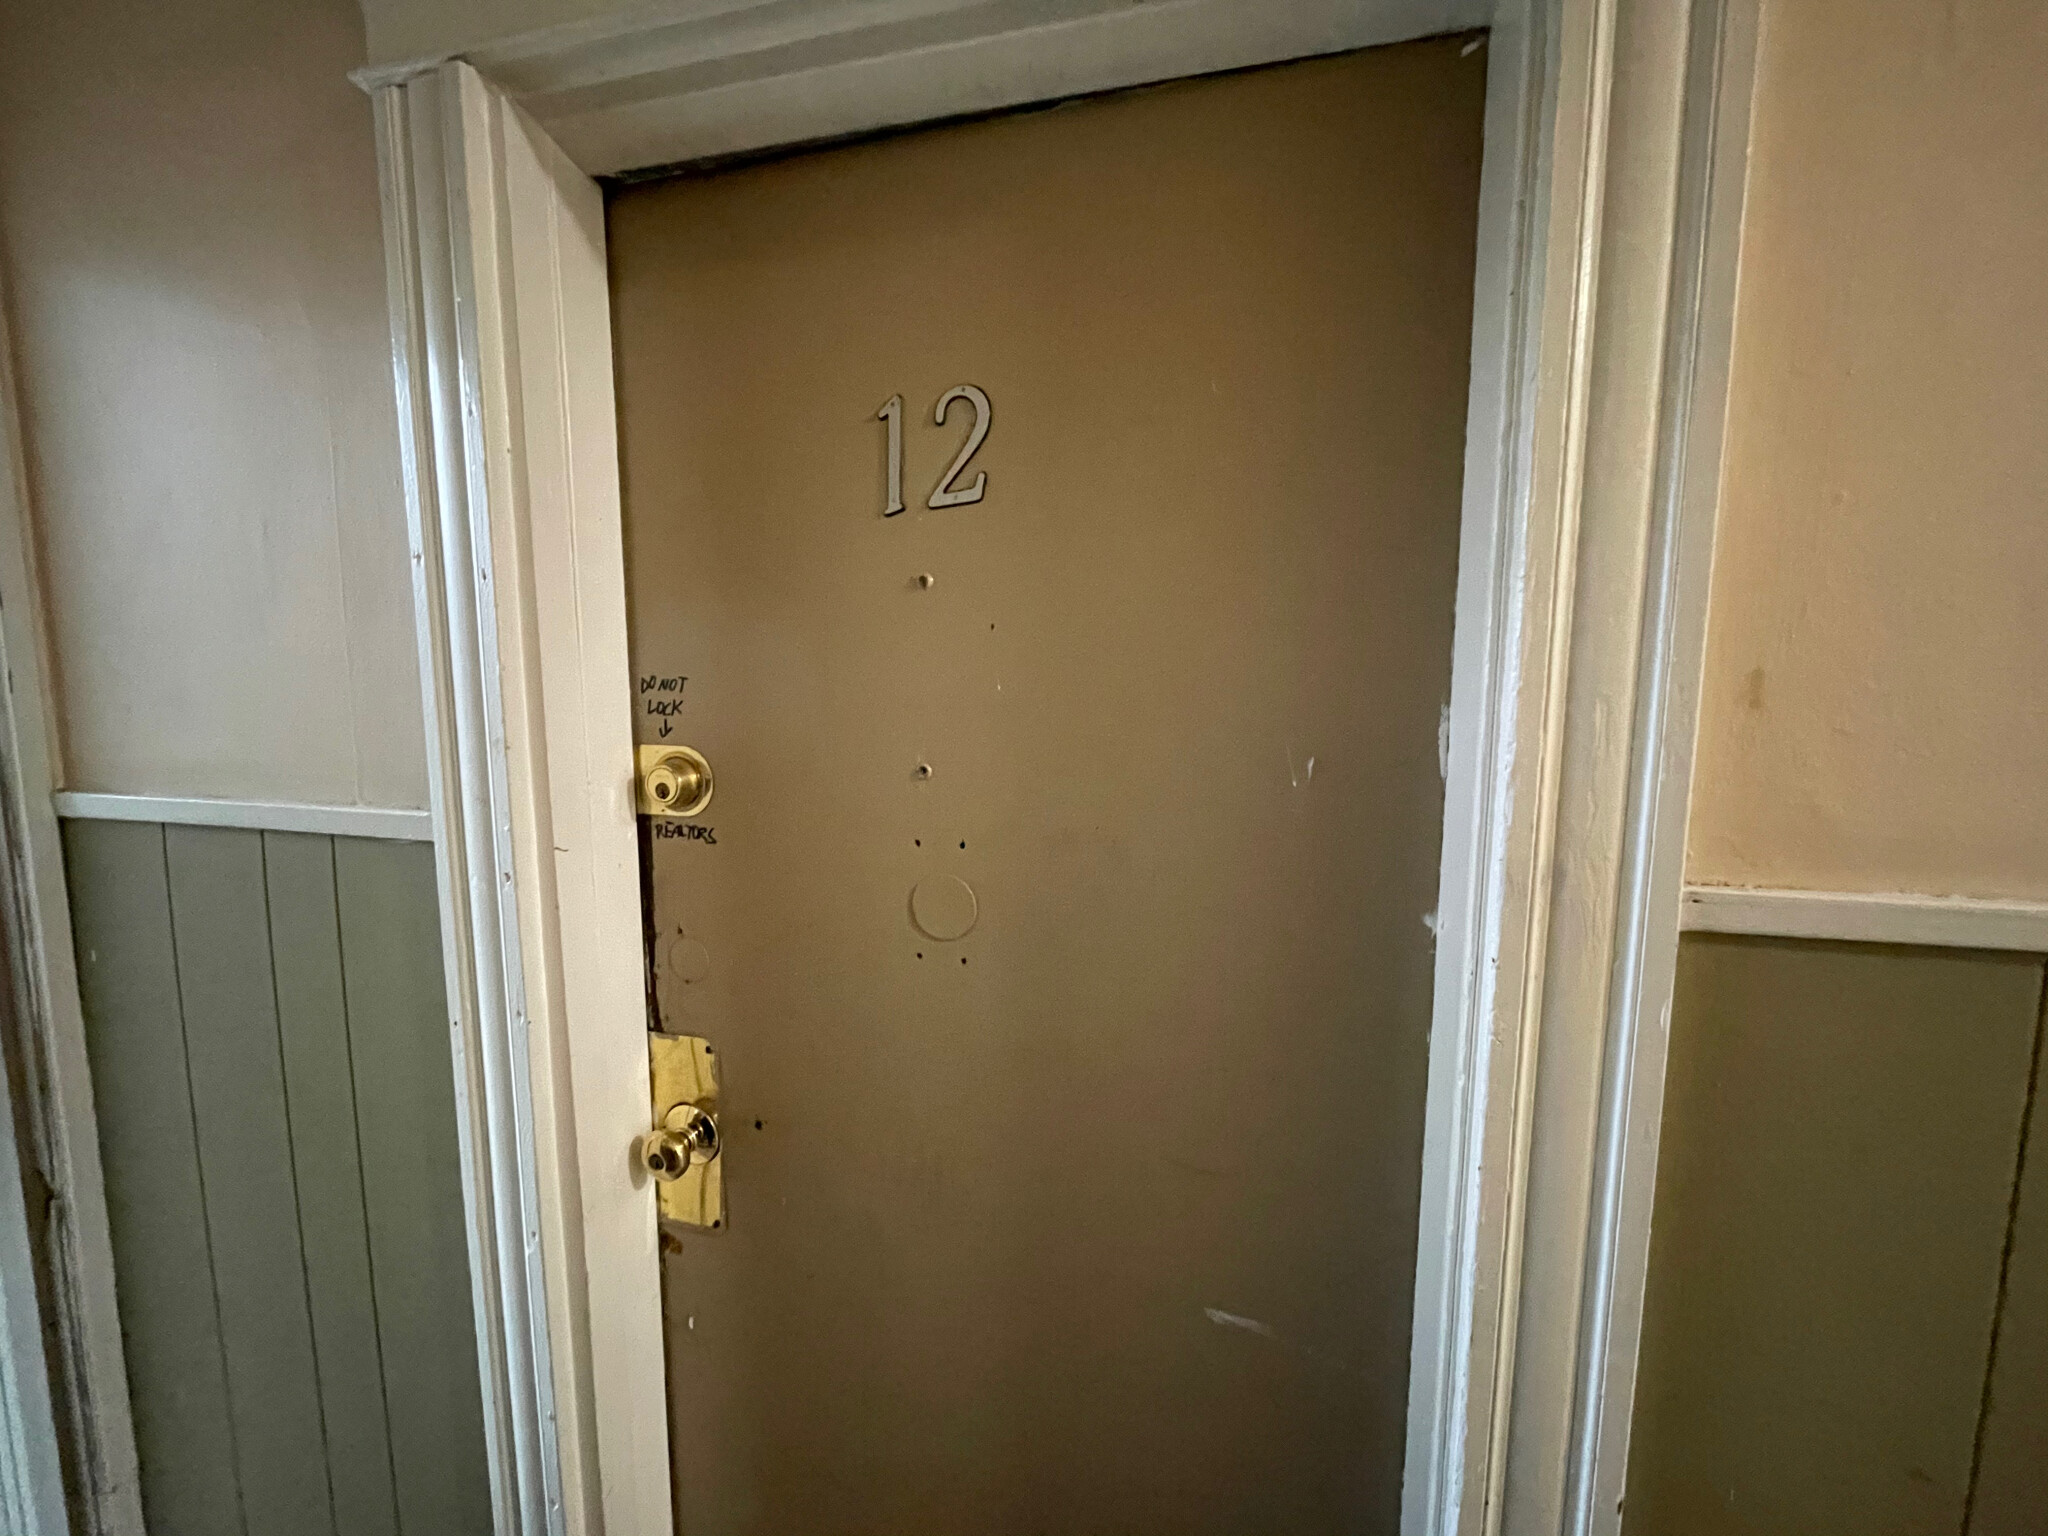 Photos of apartment on Dalton,Boston MA 02115